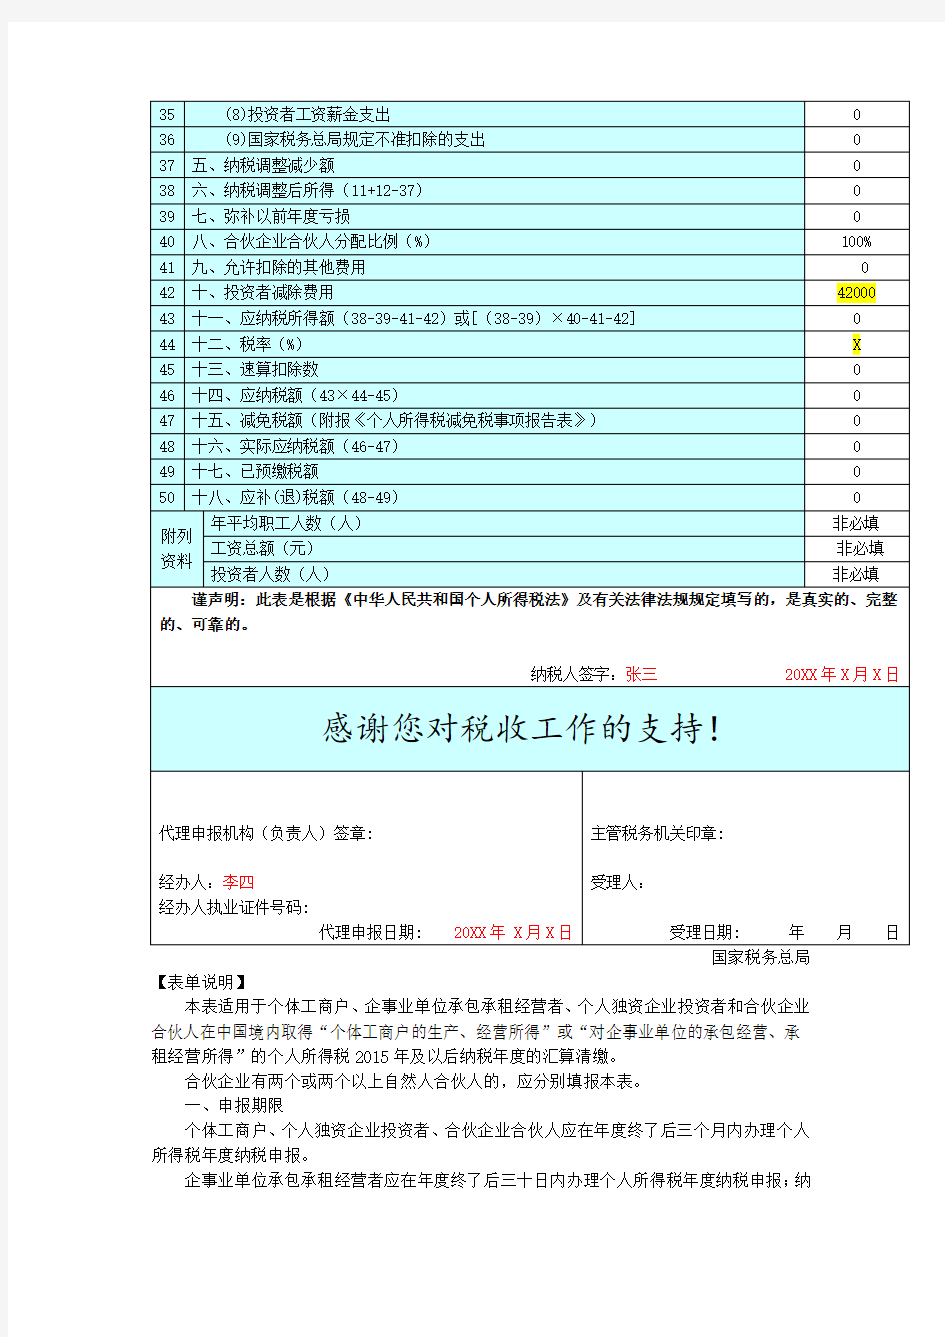 个人所得税生产经营所得纳税申报表(B表)